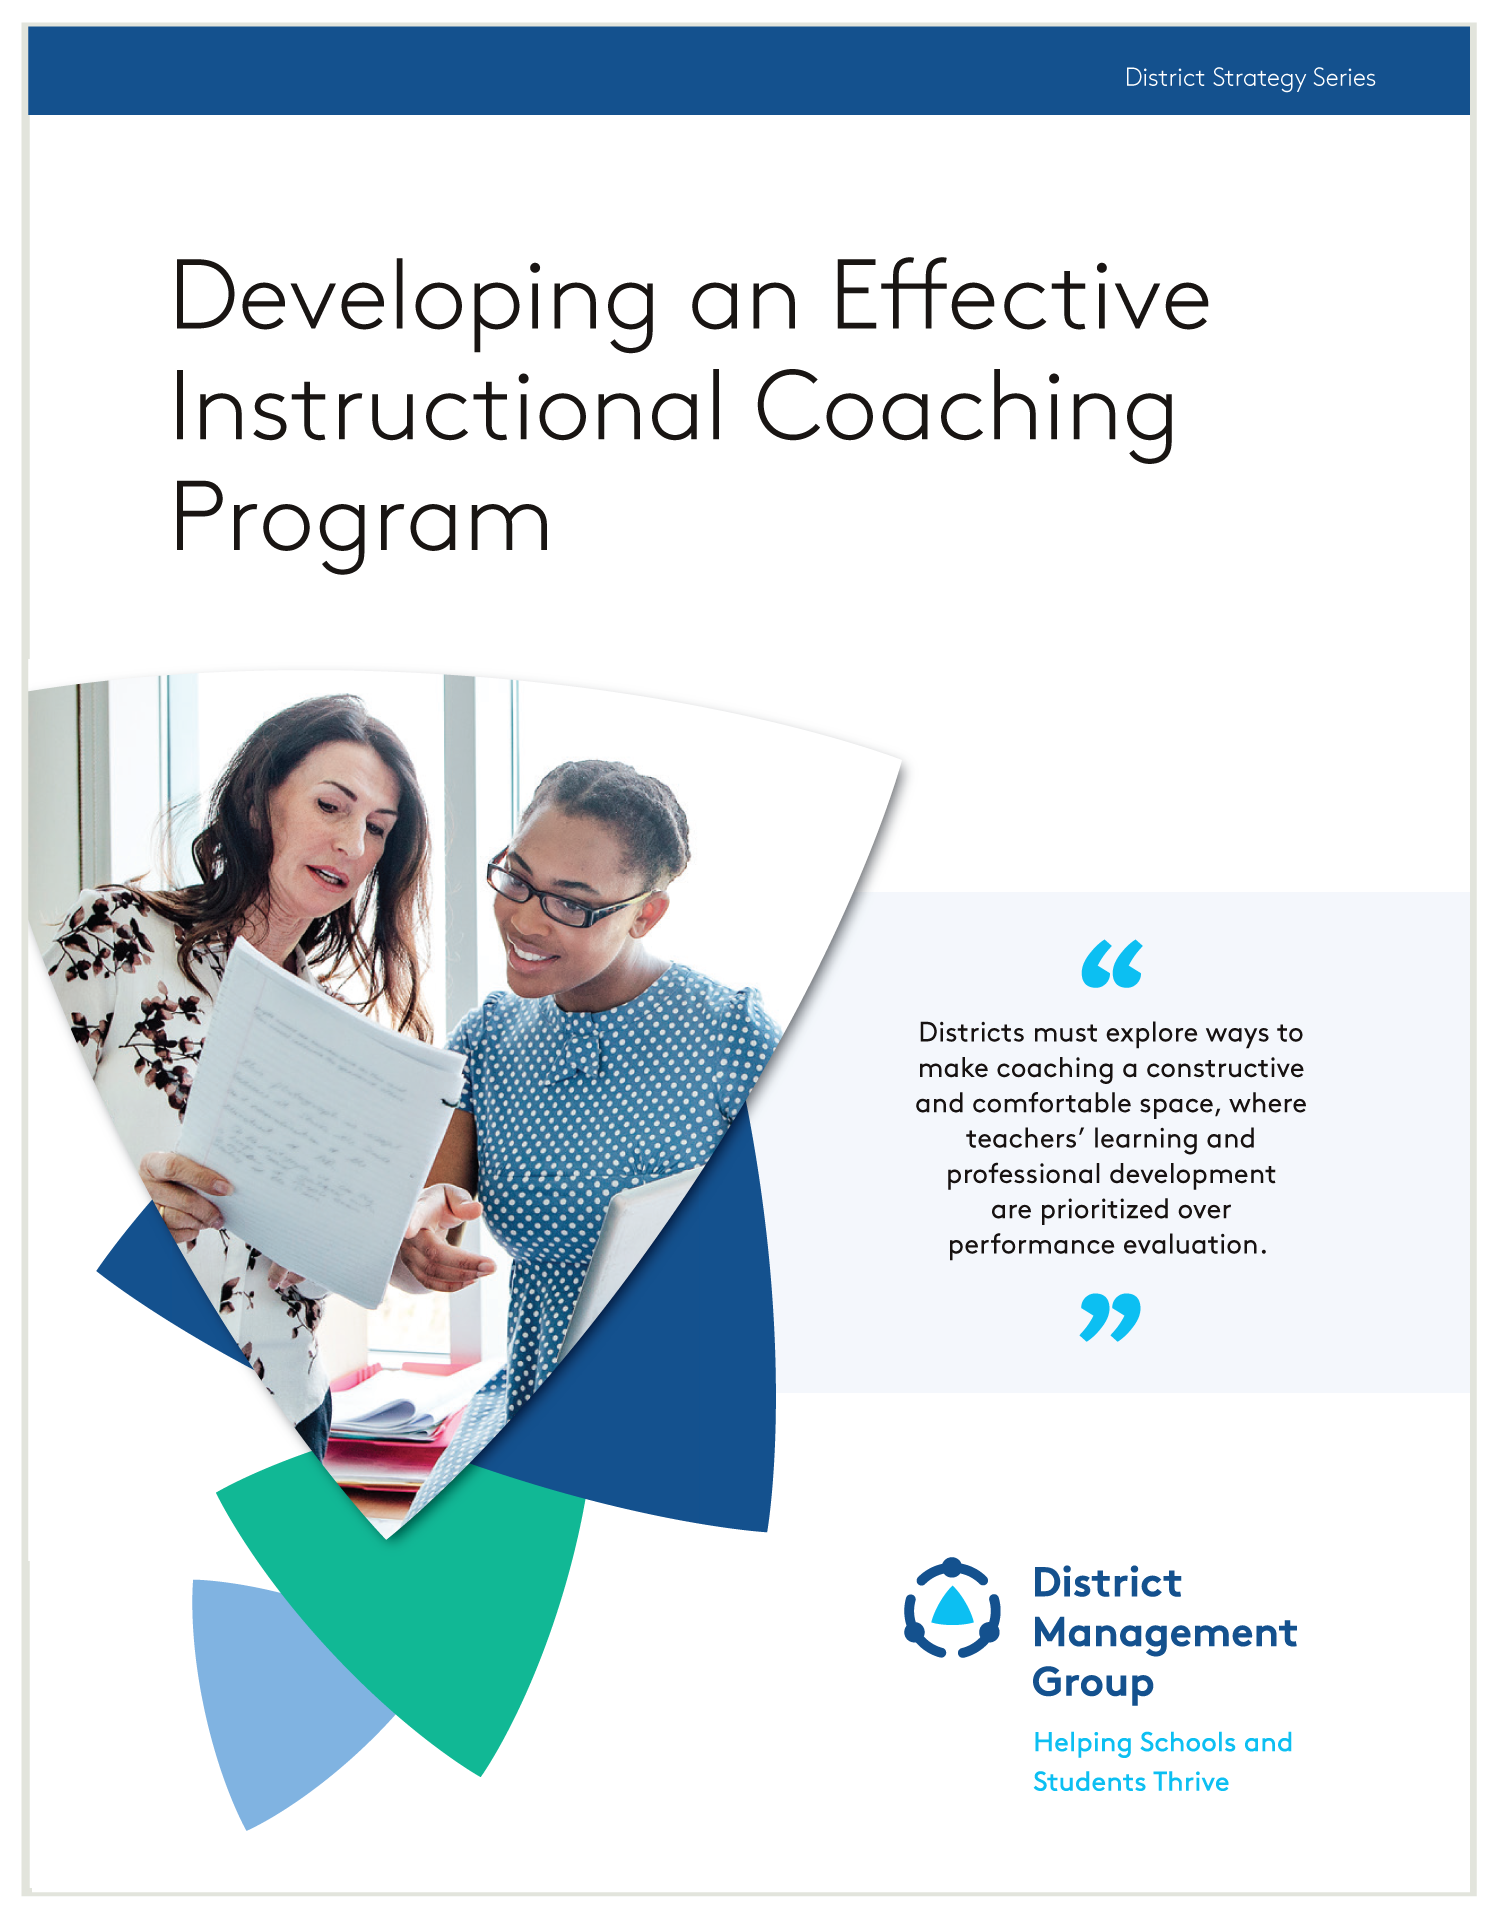 Developing an Effective Instructional Coaching Program